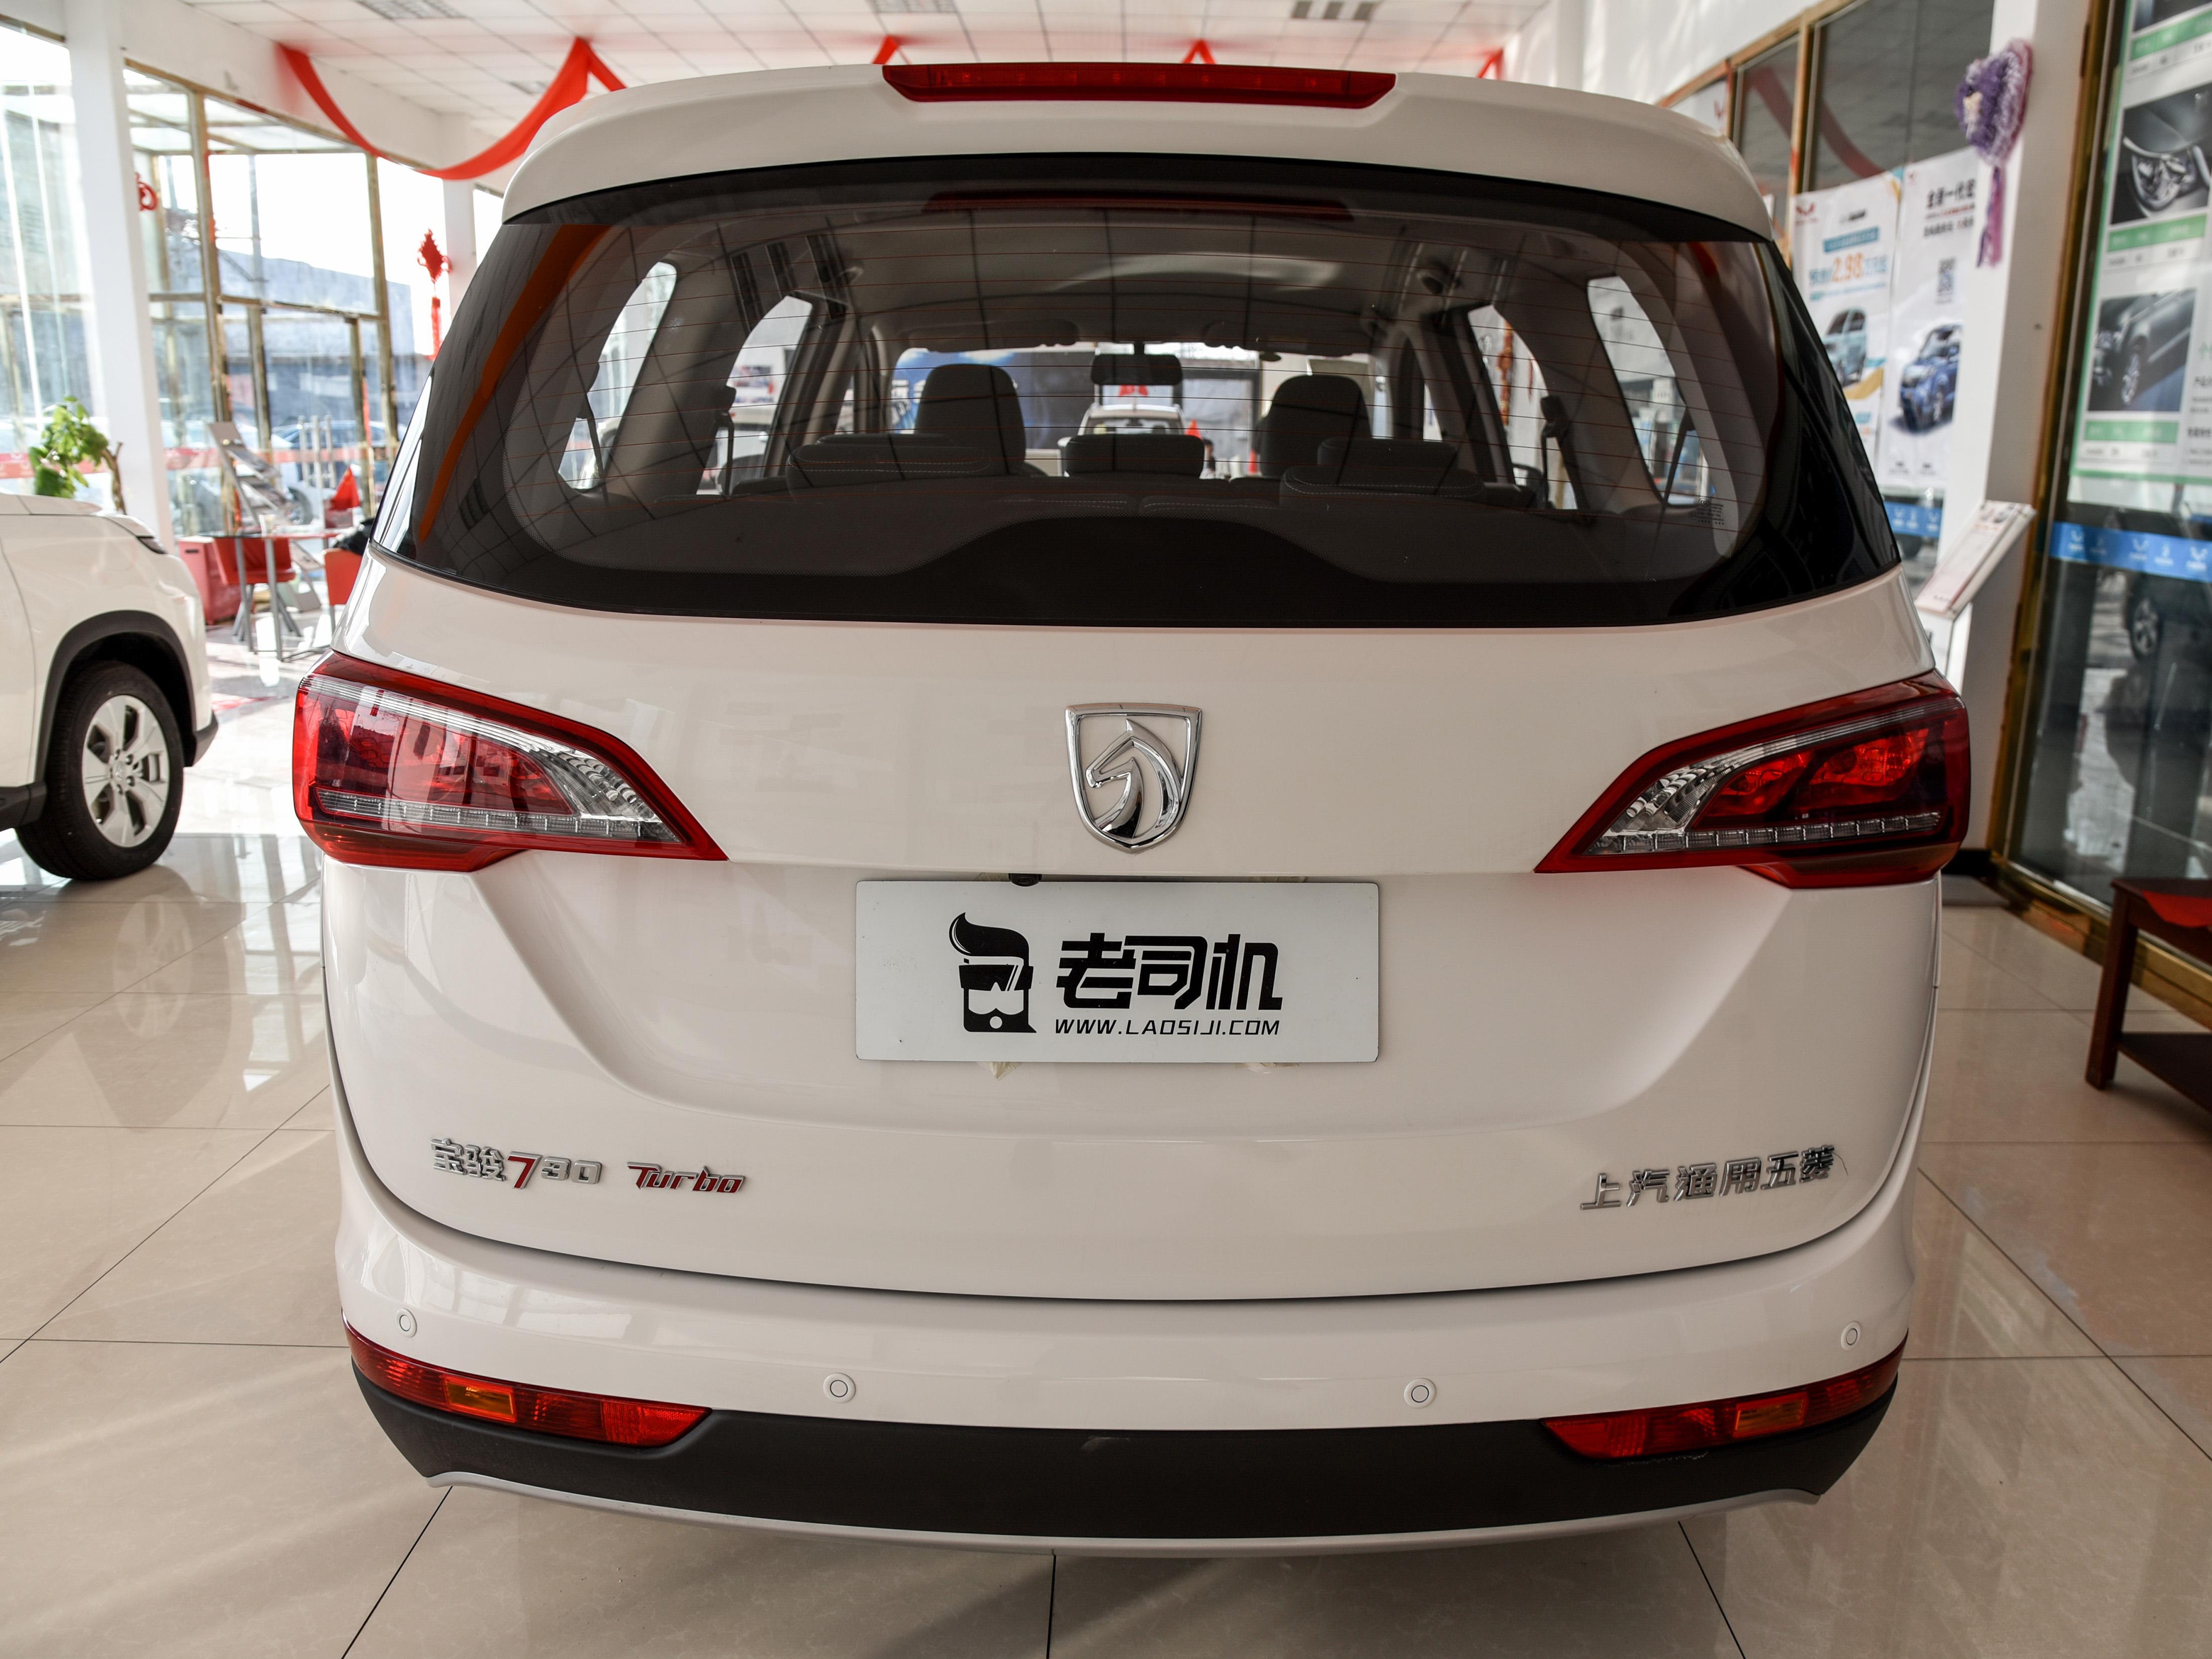 汽车技术的前进,我们中国品牌也日益进步,今天要跟大家聊到的宝骏730